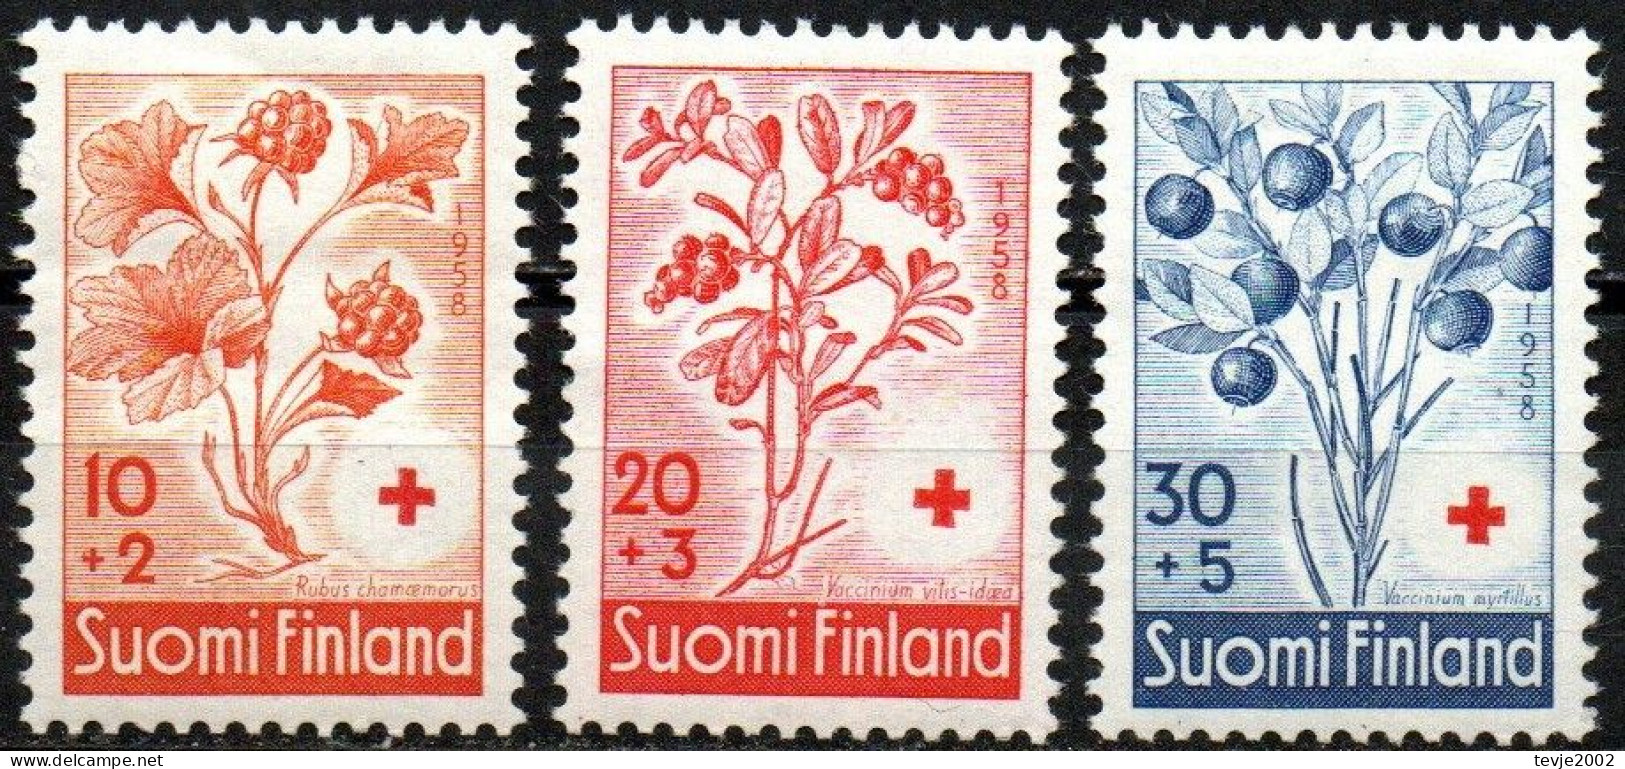 Finnland 1958 - Mi.Nr. 499 - 501 - Postfrisch MNH - Früchte Beeren Berries - Fruits